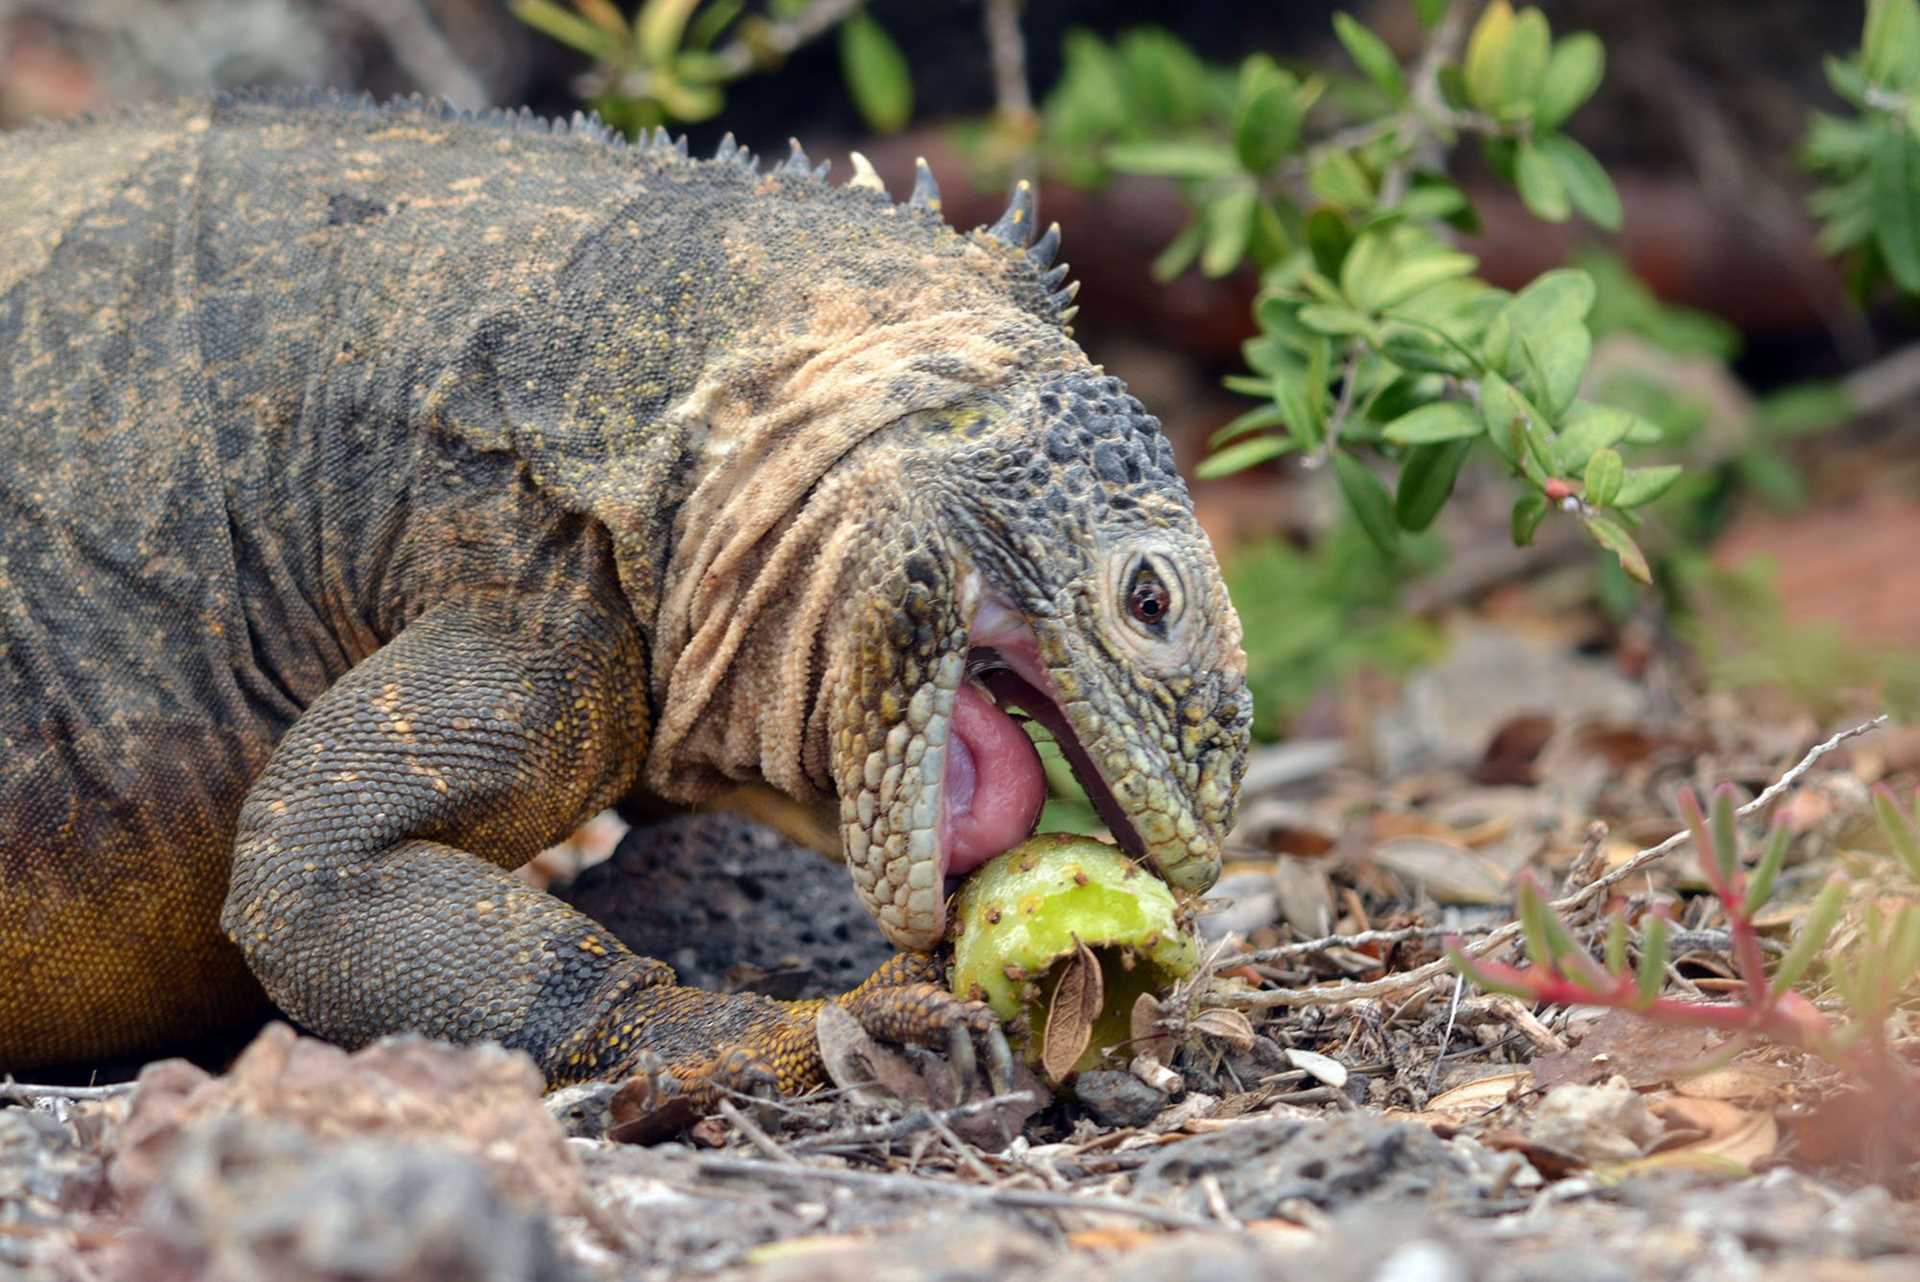 land iguana eating cactus fruit